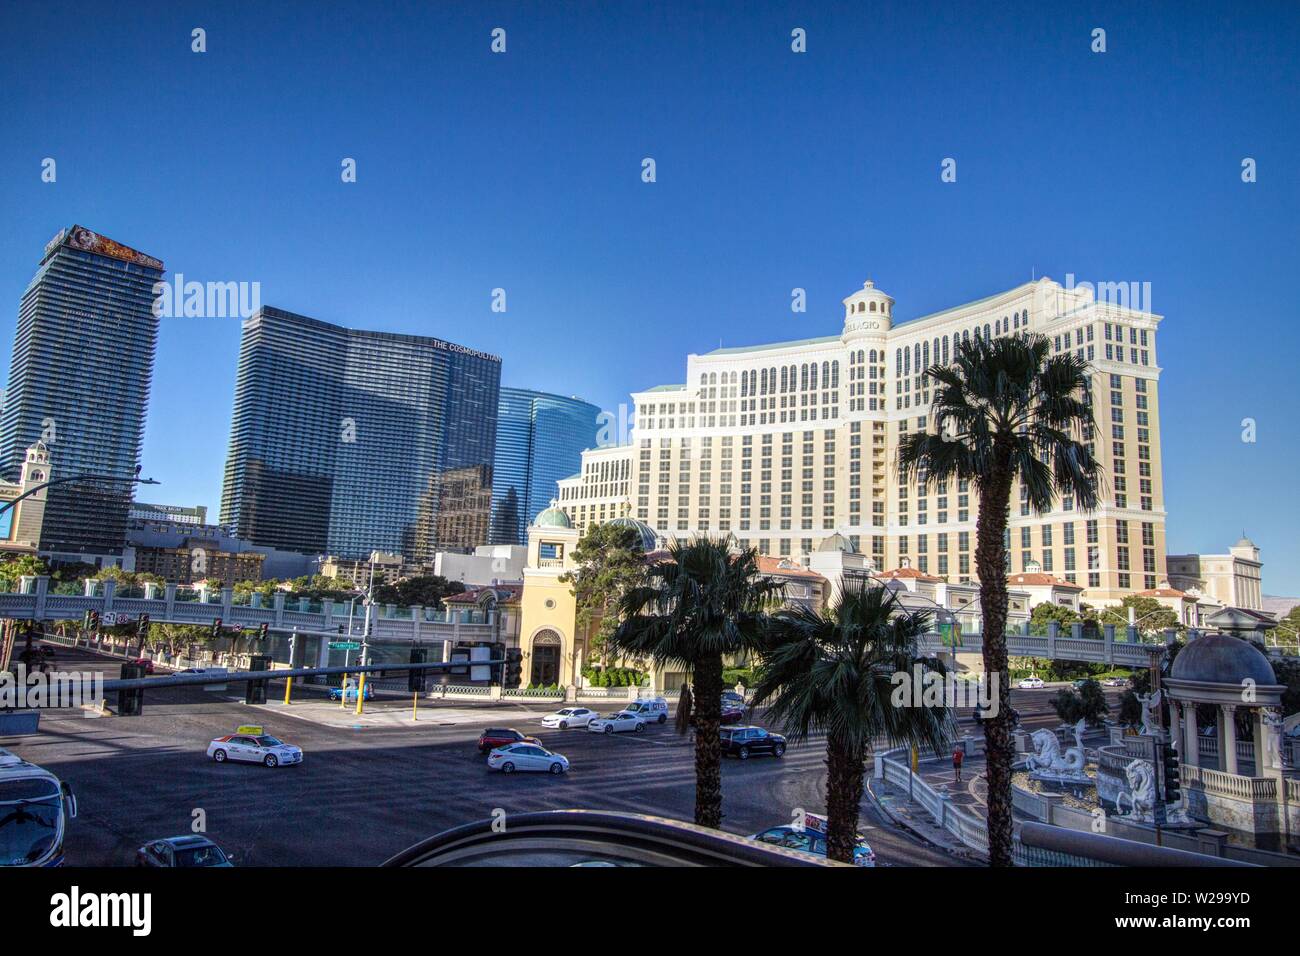 Las Vegas, Nevada, Stati Uniti d'America - 6 Maggio 2019: incrocio occupato all'intersezione di Flamingo e Las Vegas Boulevard con il Bellagio resort. Foto Stock